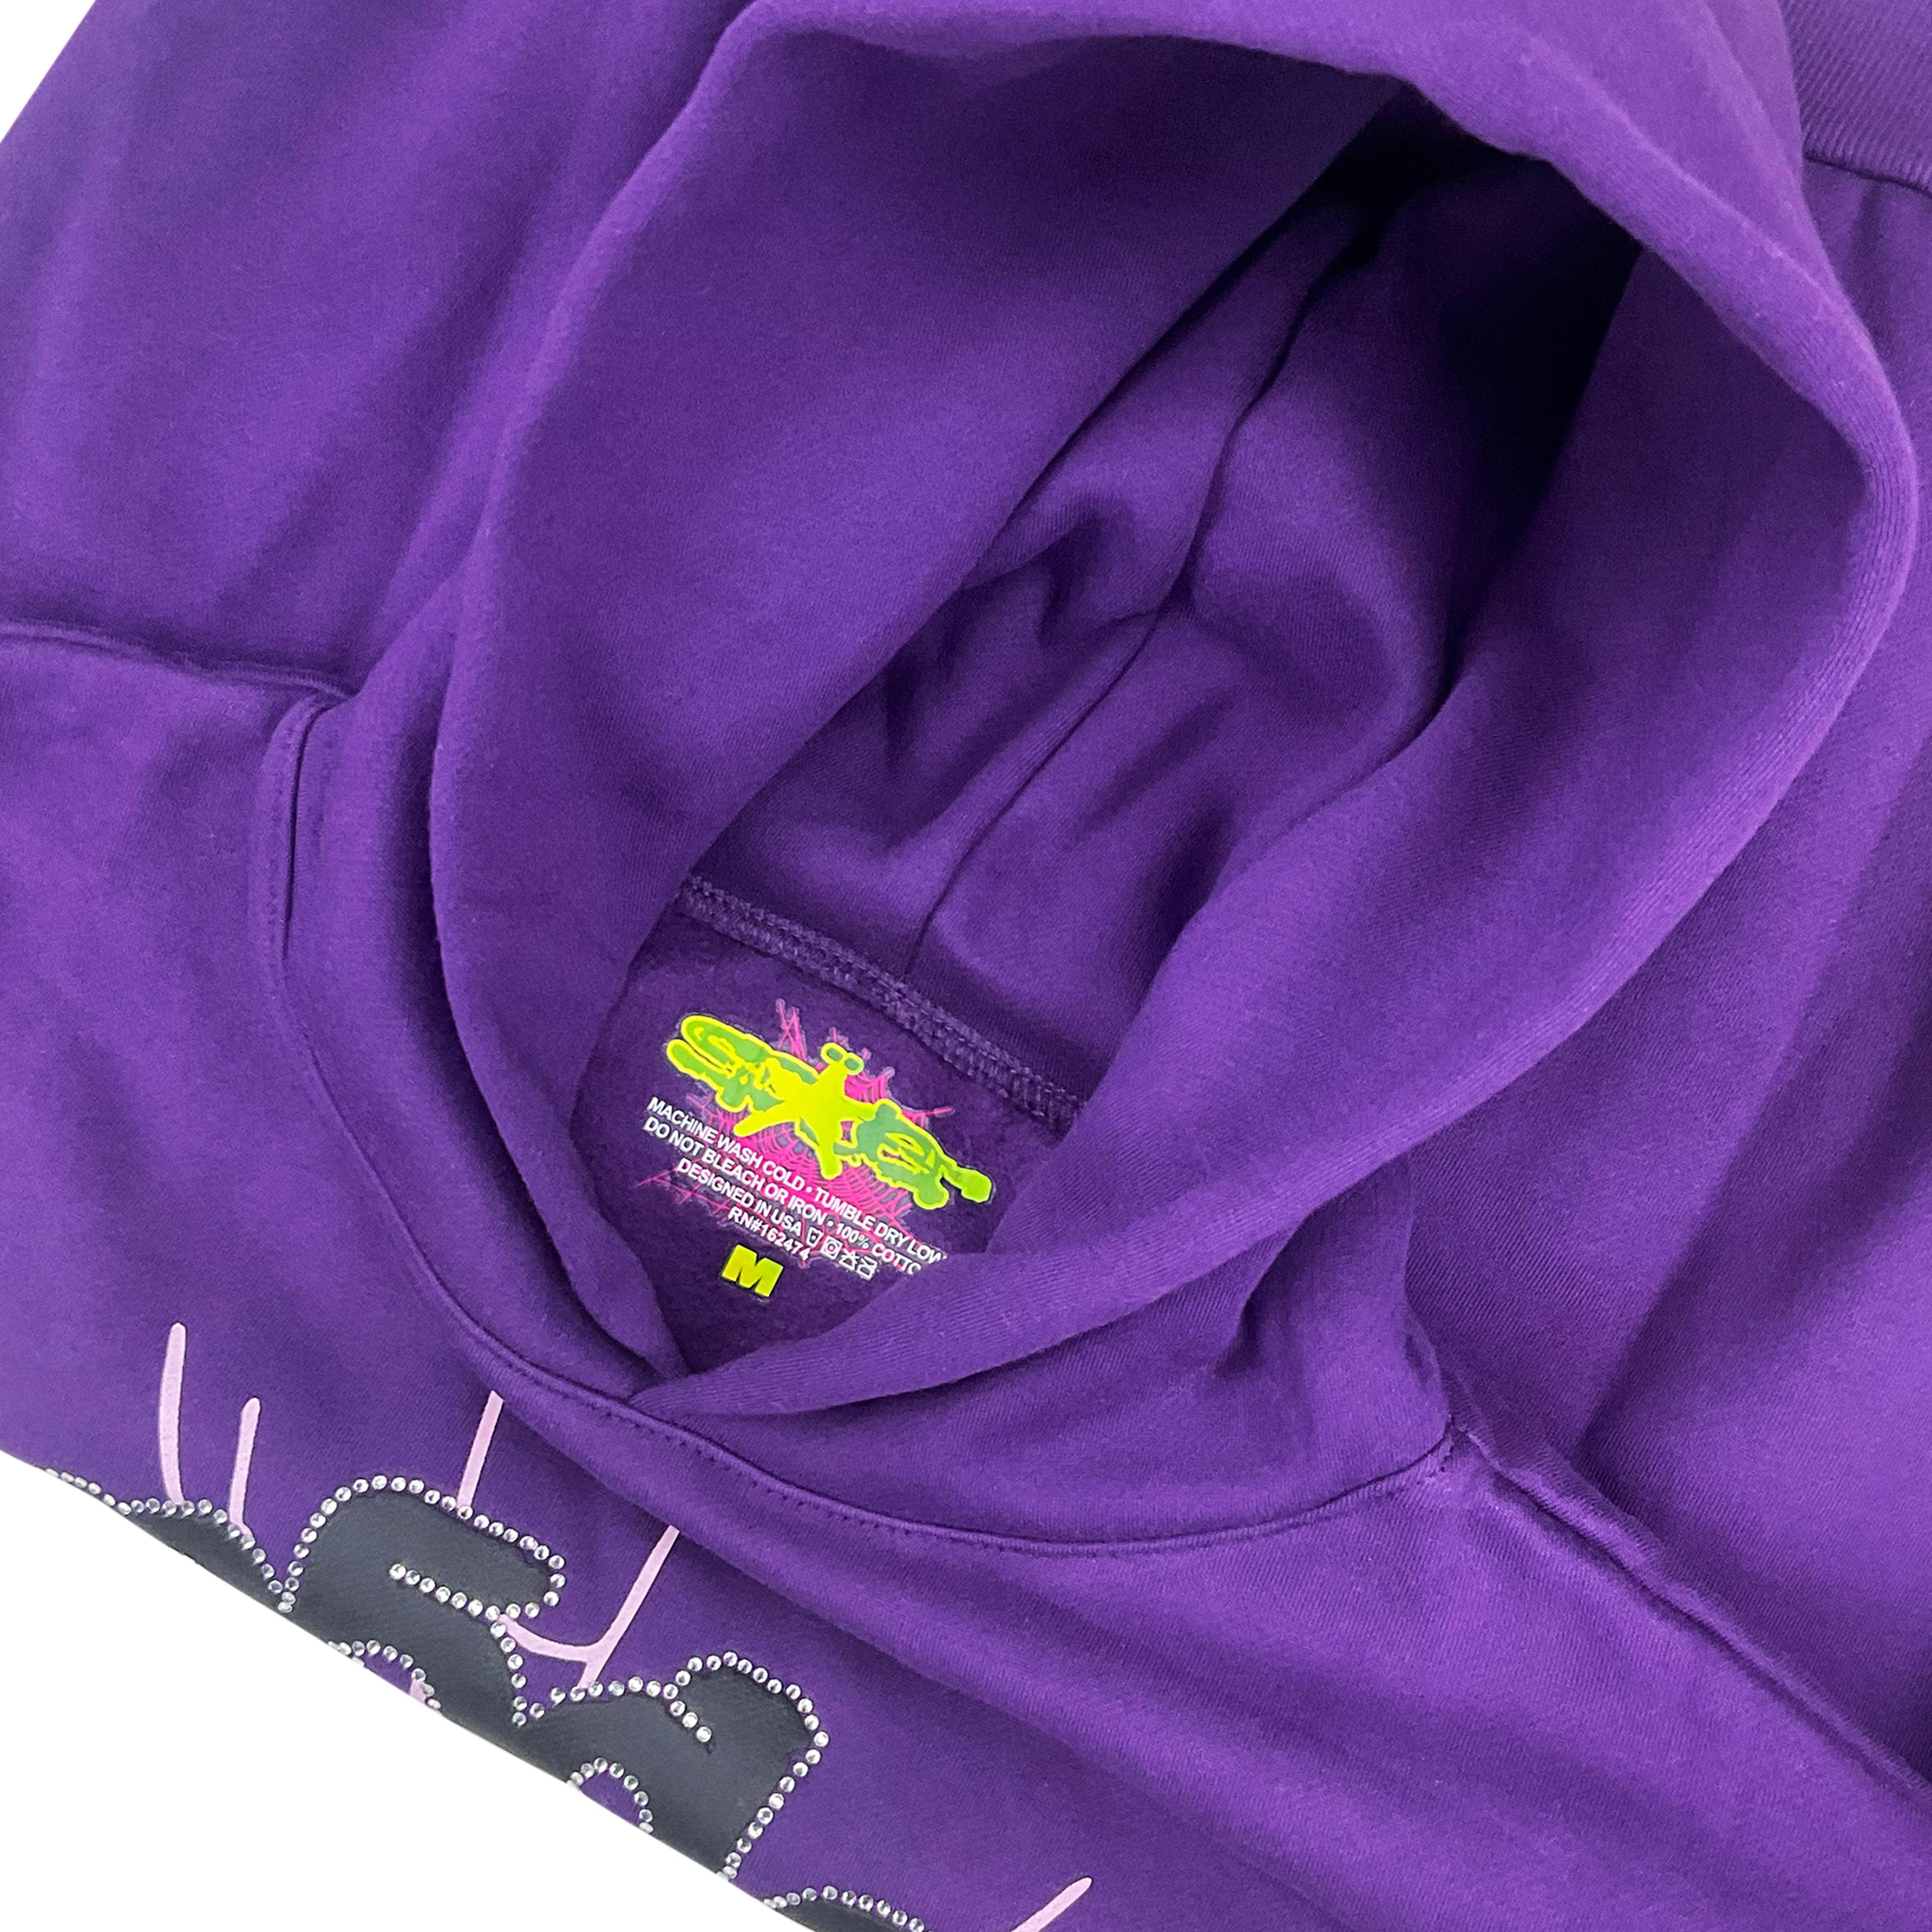 Alternate View 2 of Sp5der Web Hoodie Sweatshirt Purple | Spider Worldwide